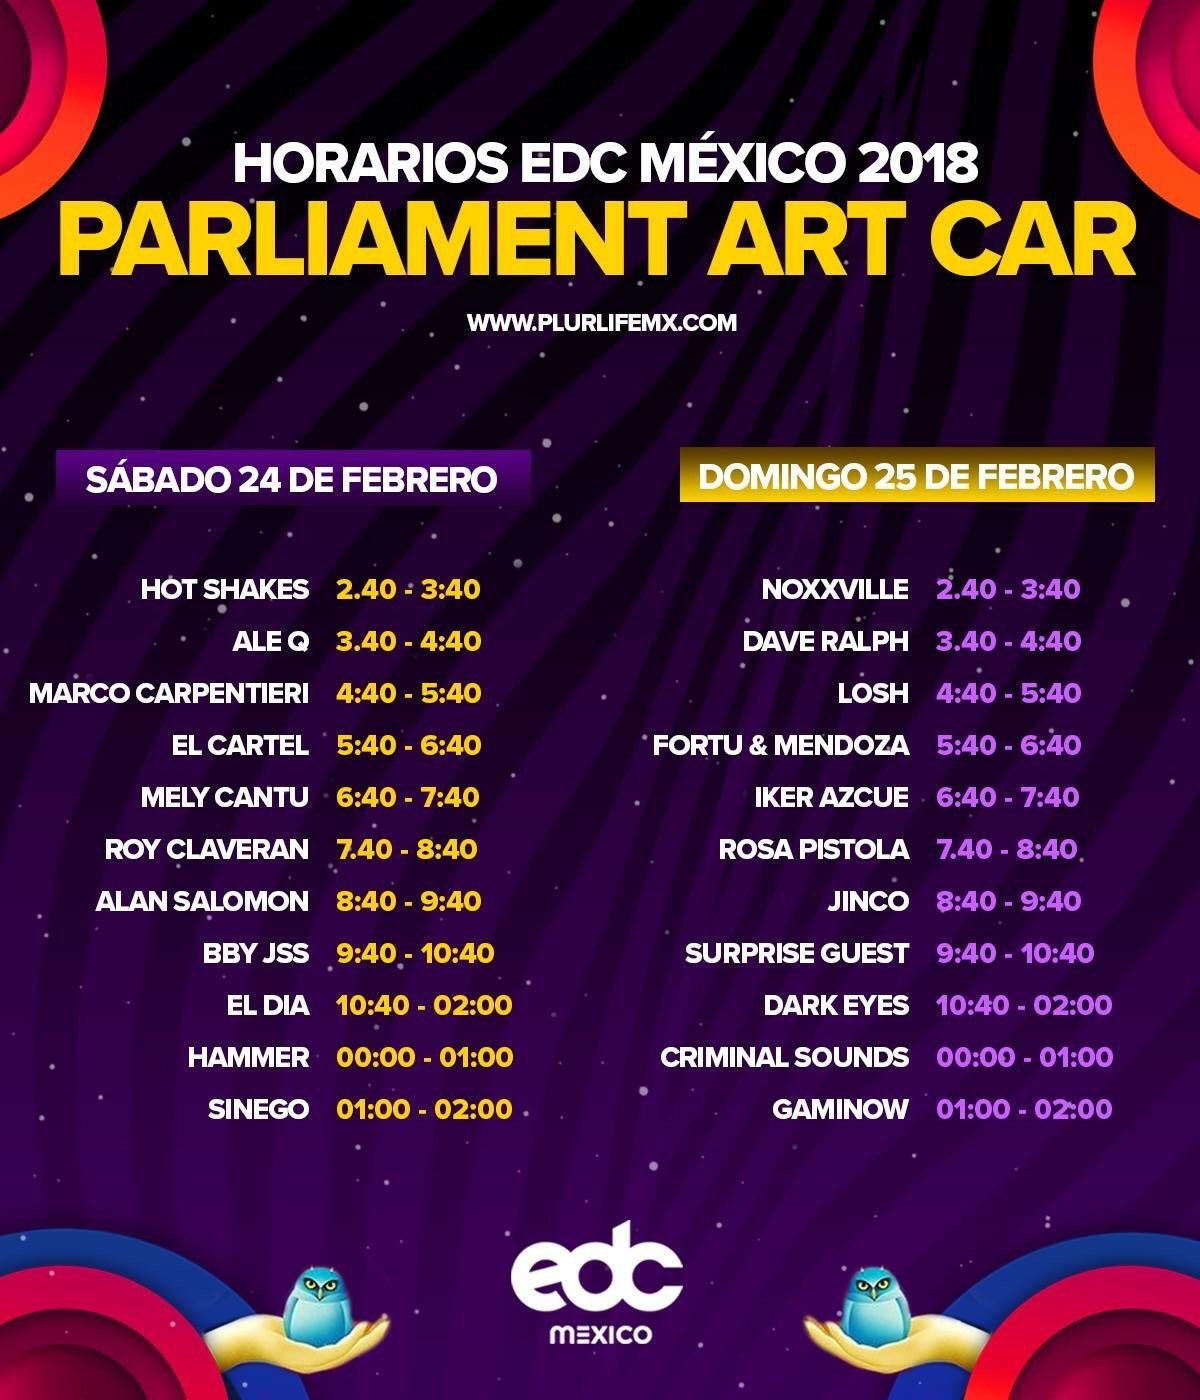 Horarios EDC Mexico 2018 escenario PARLIAMENT ARTCAR